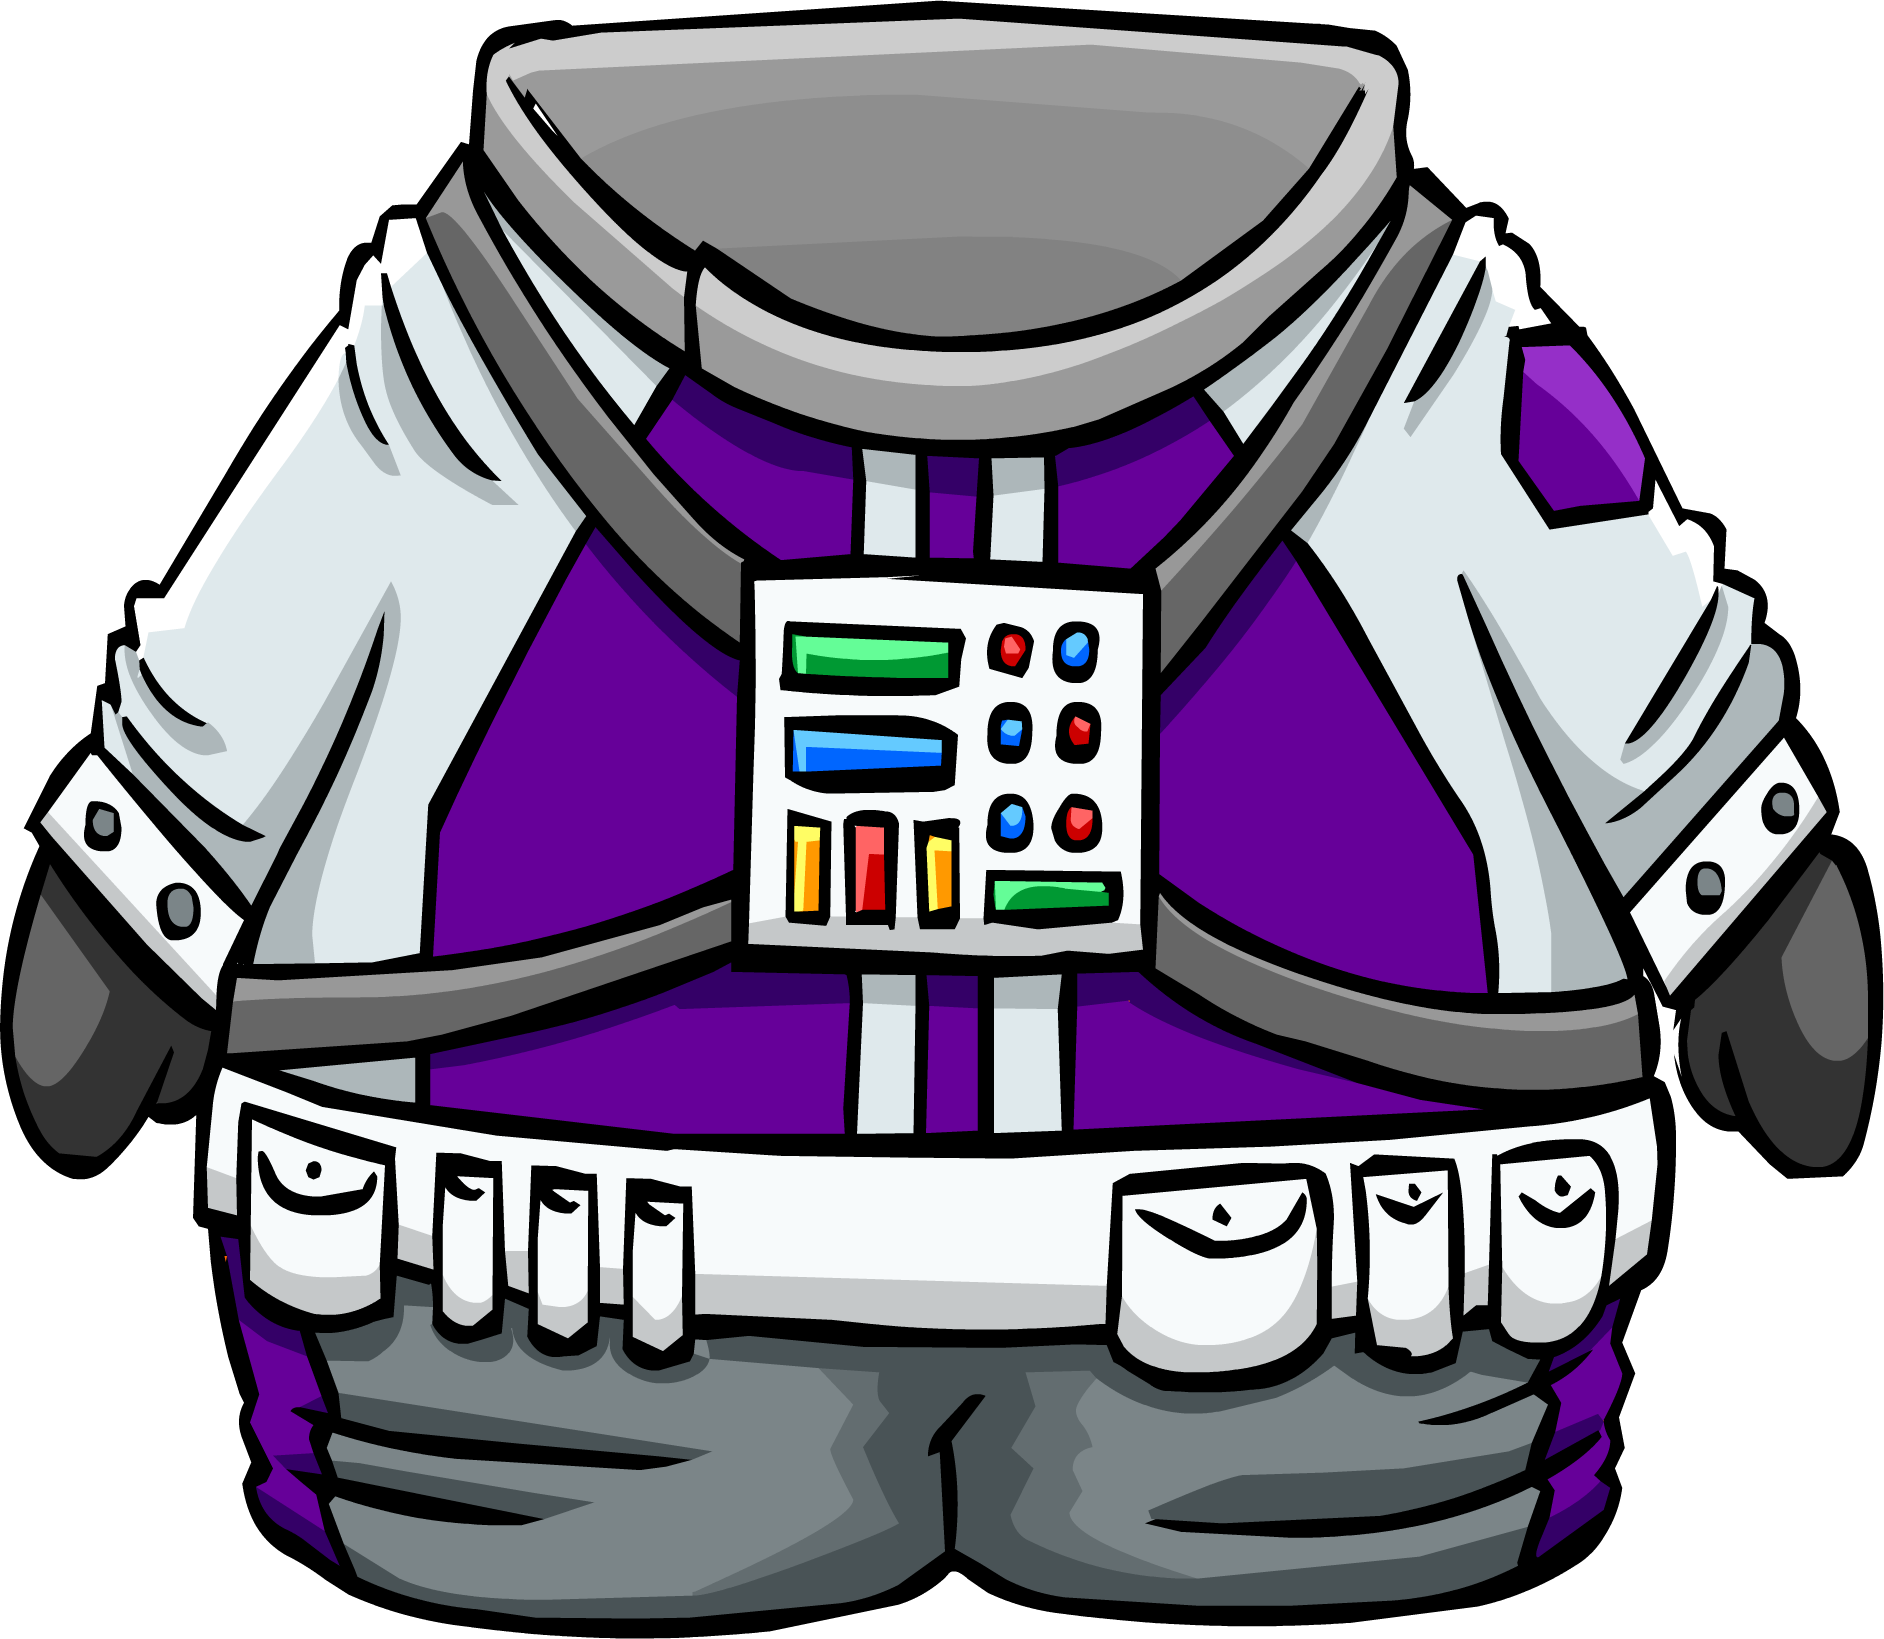 Space Suit Astronaut Outer Space Apollo/skylab A7l - Space Suit Astronaut Outer Space Apollo/skylab A7l (1884x1639)